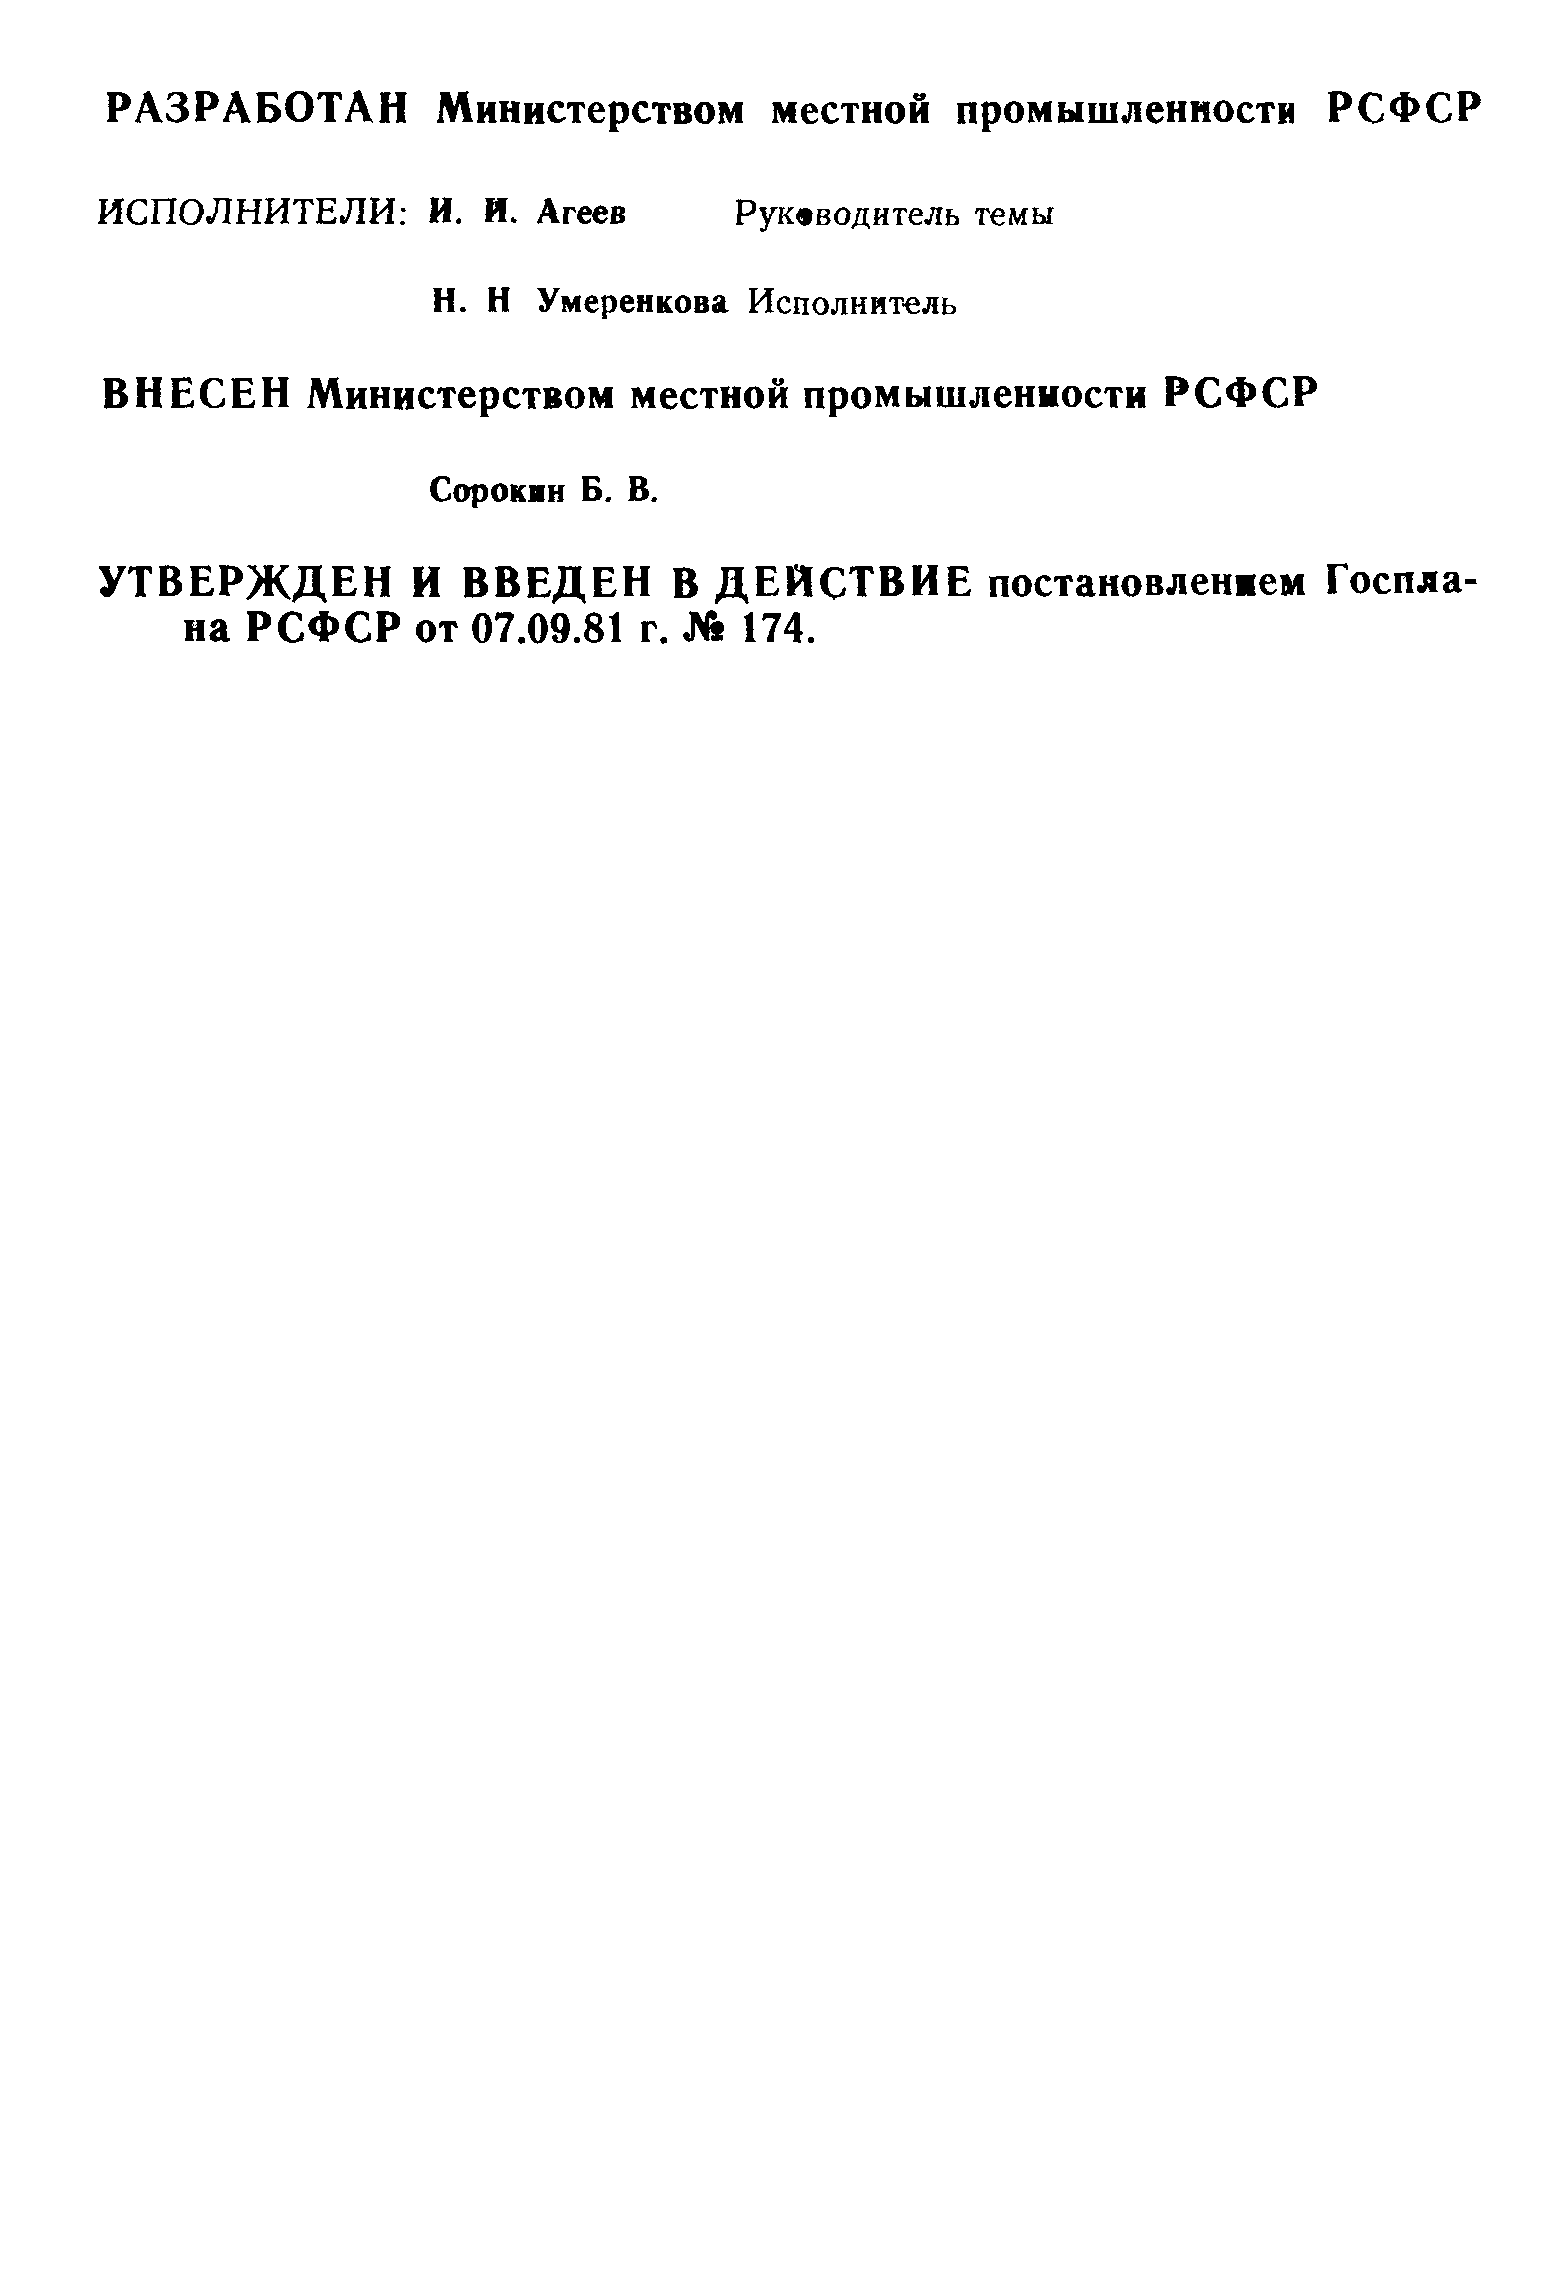 РСТ РСФСР 536-81